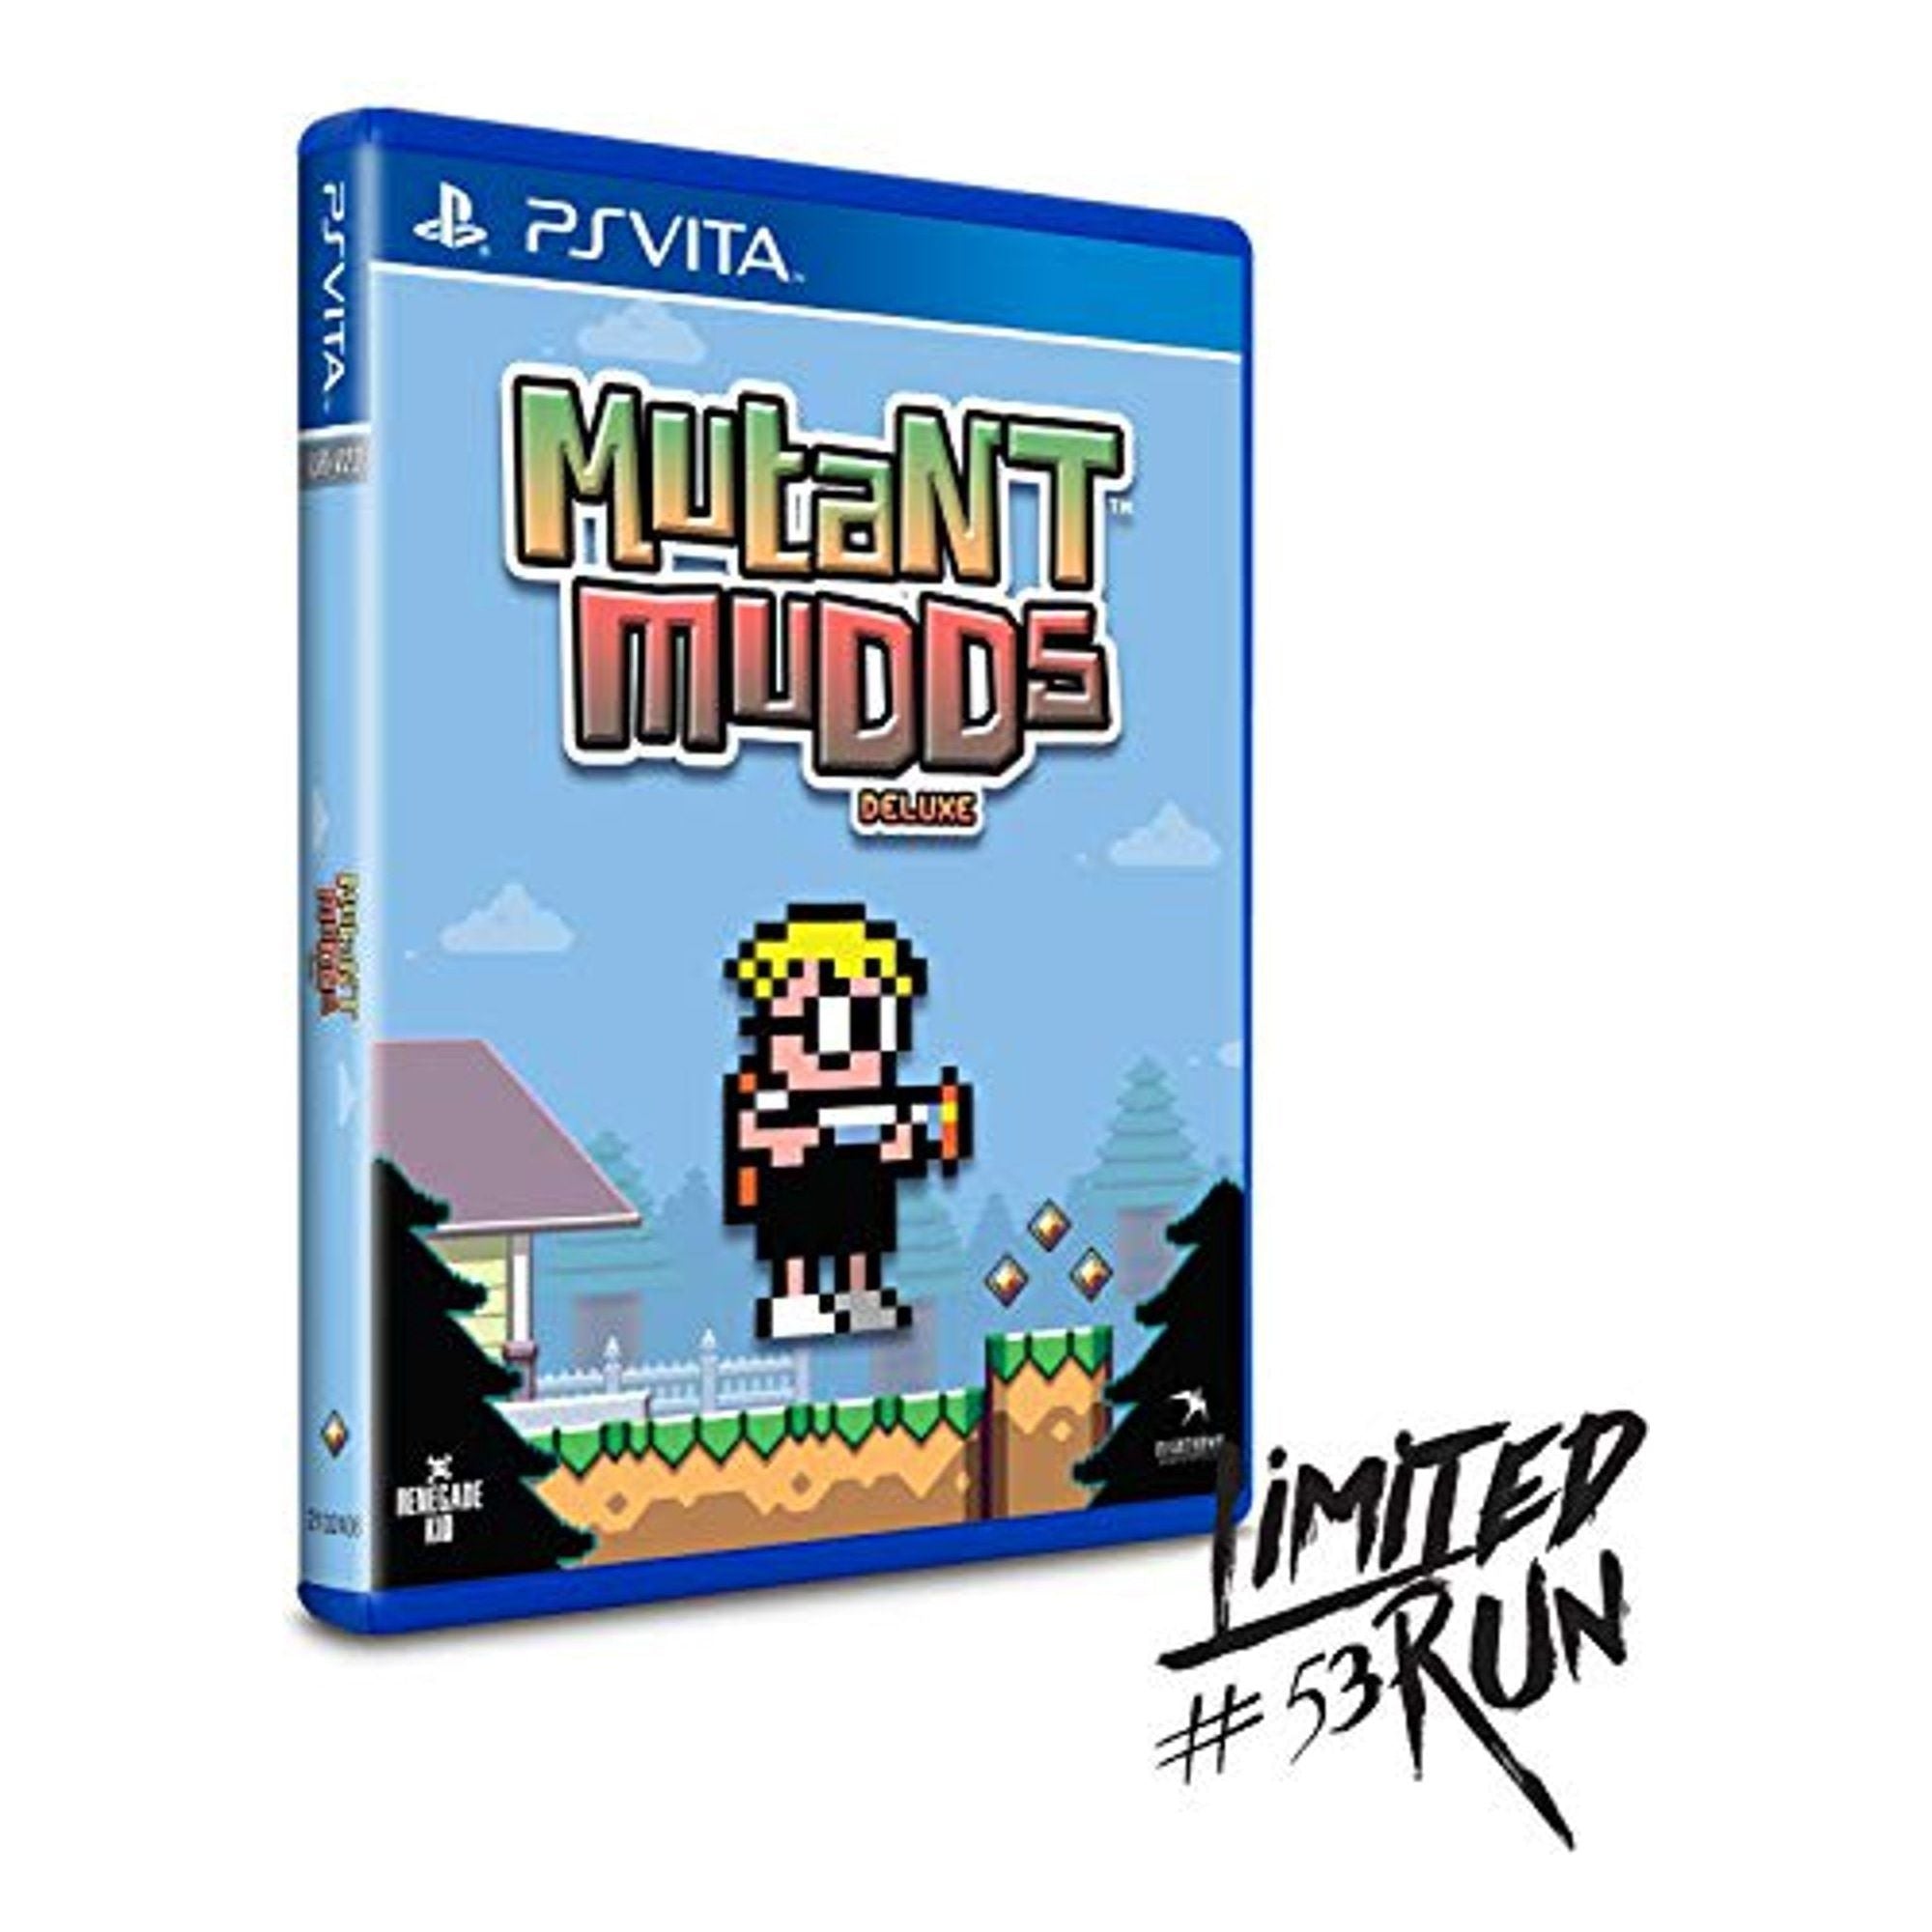 VITA - Mutant Mudds Deluxe (jeu à édition limitée #53) (au cas où)